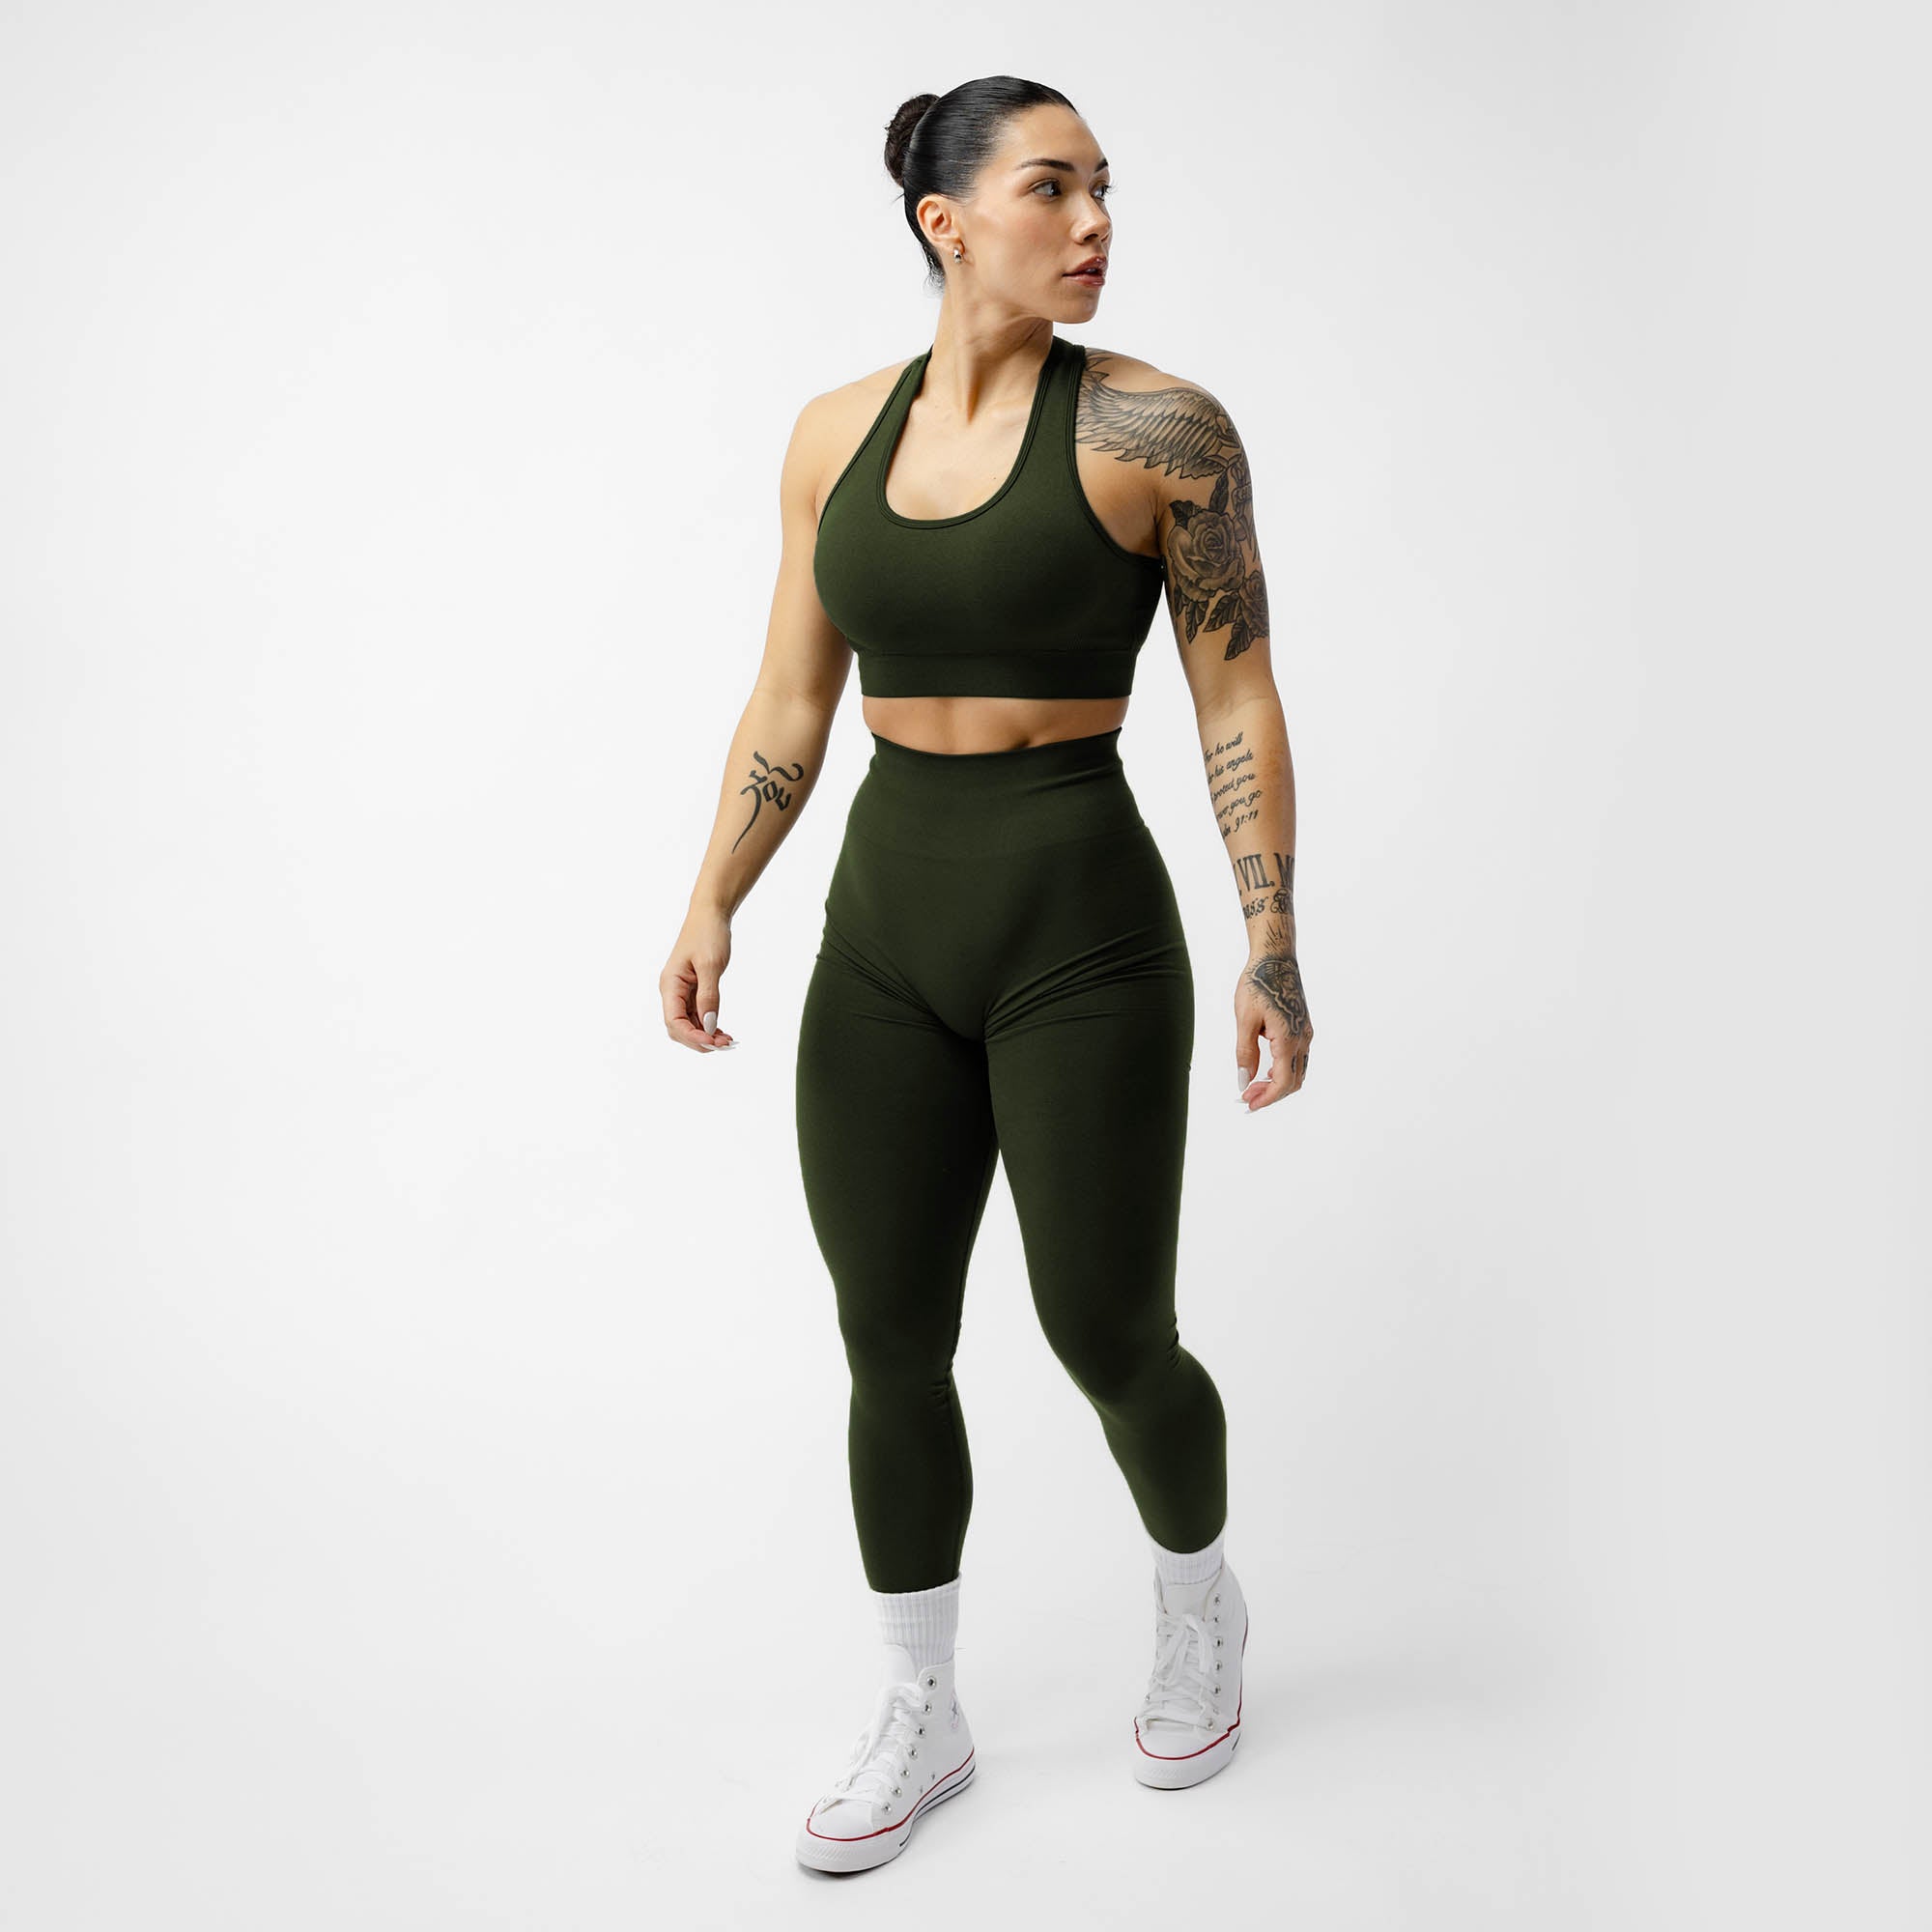 https://ca.gymreapers.com/cdn/shop/files/legacy-leggings-ranger-green-front-full.jpg?v=1707844570&width=2000